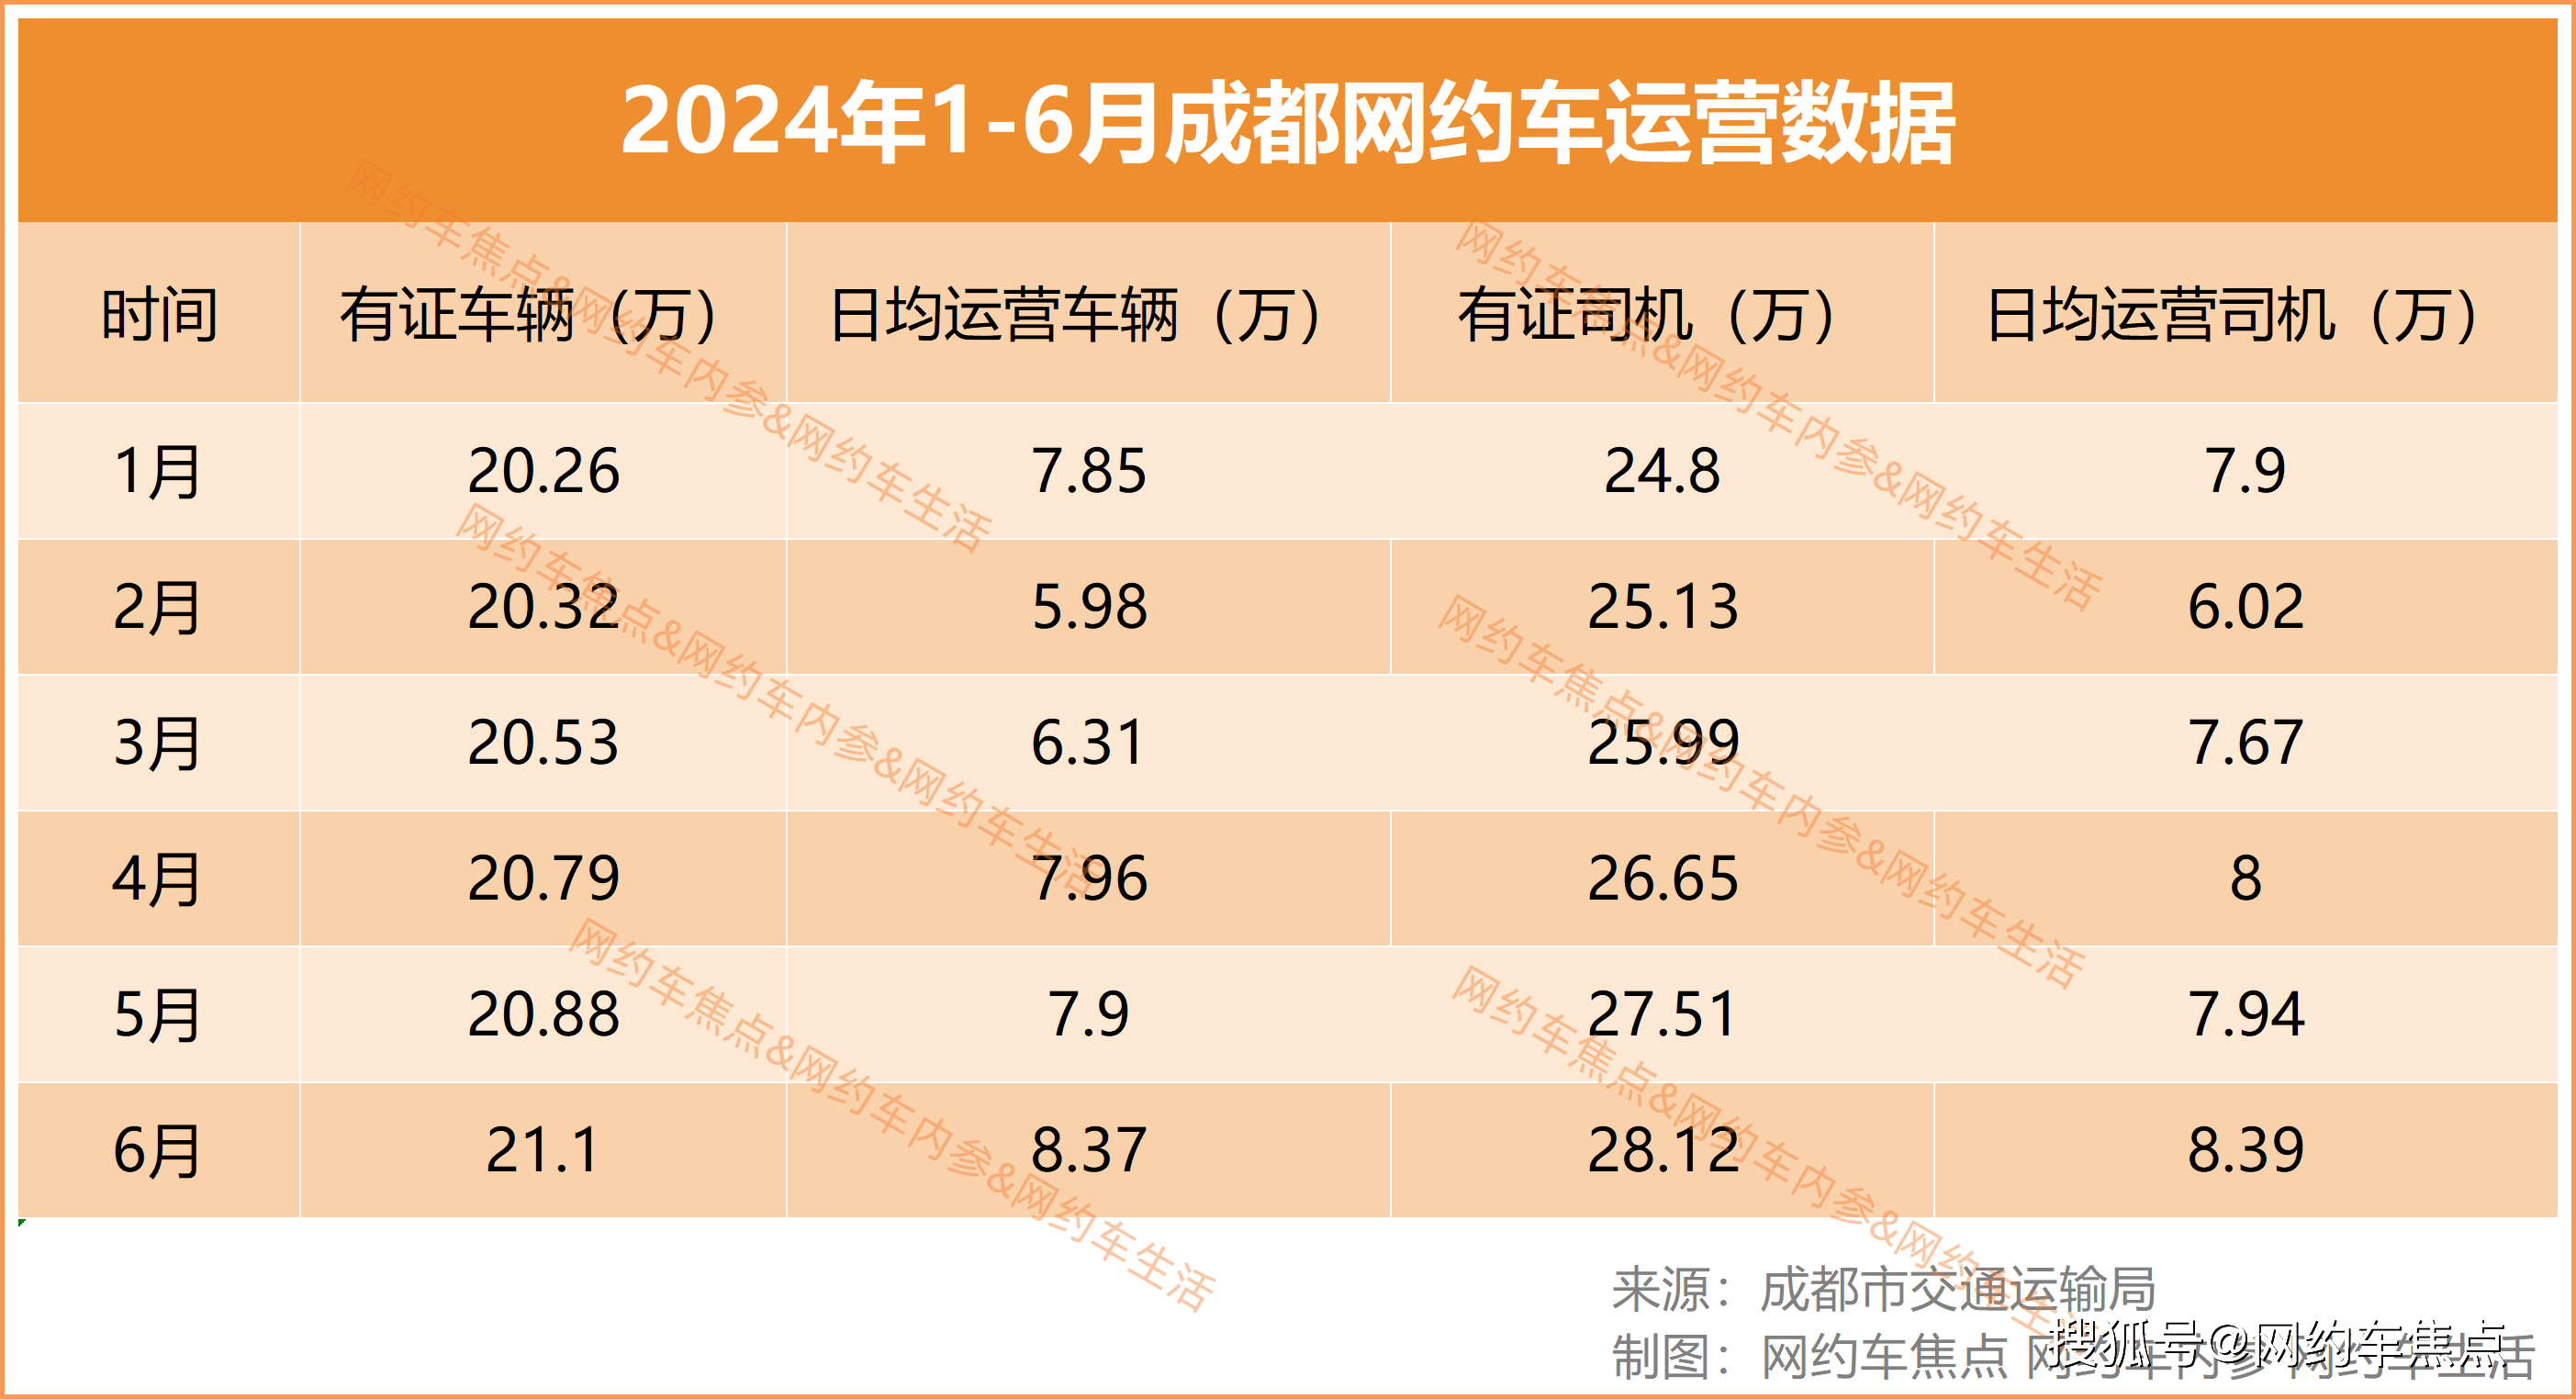 🌸【2024年新澳版资料正版图库】🌸:沈阳成为全国首批数据标注基地建设城市